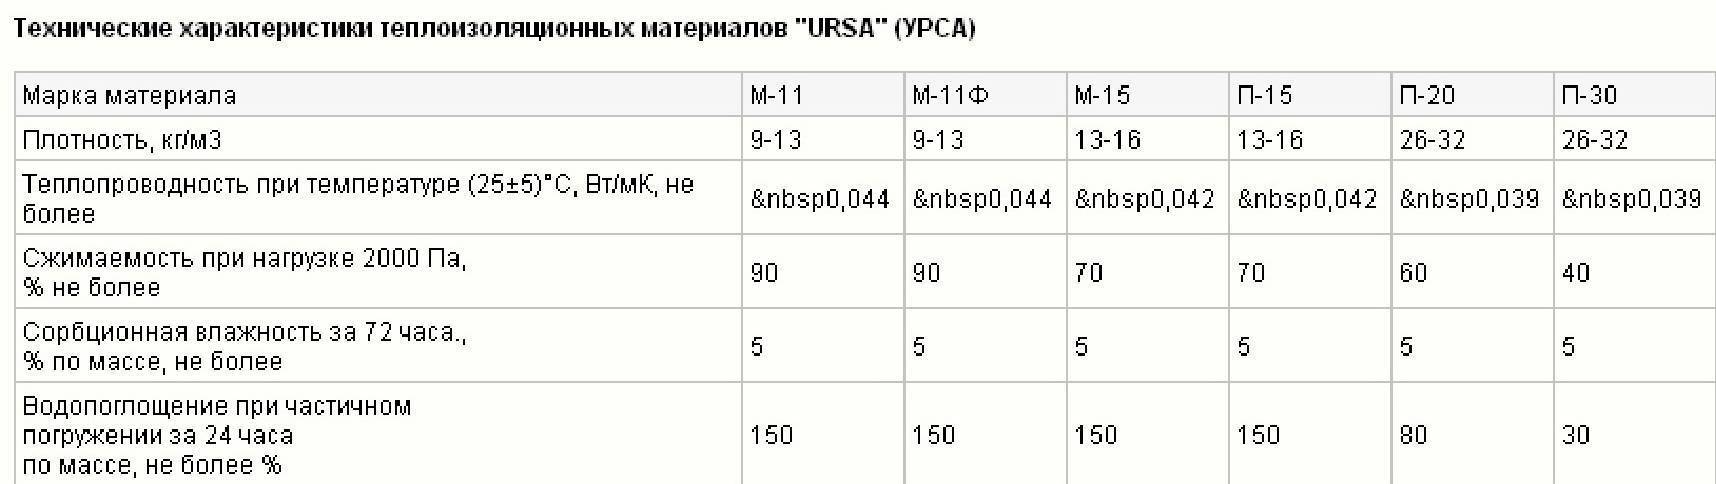 Виды утеплителей урса (ursa): технические характеристики, размеры